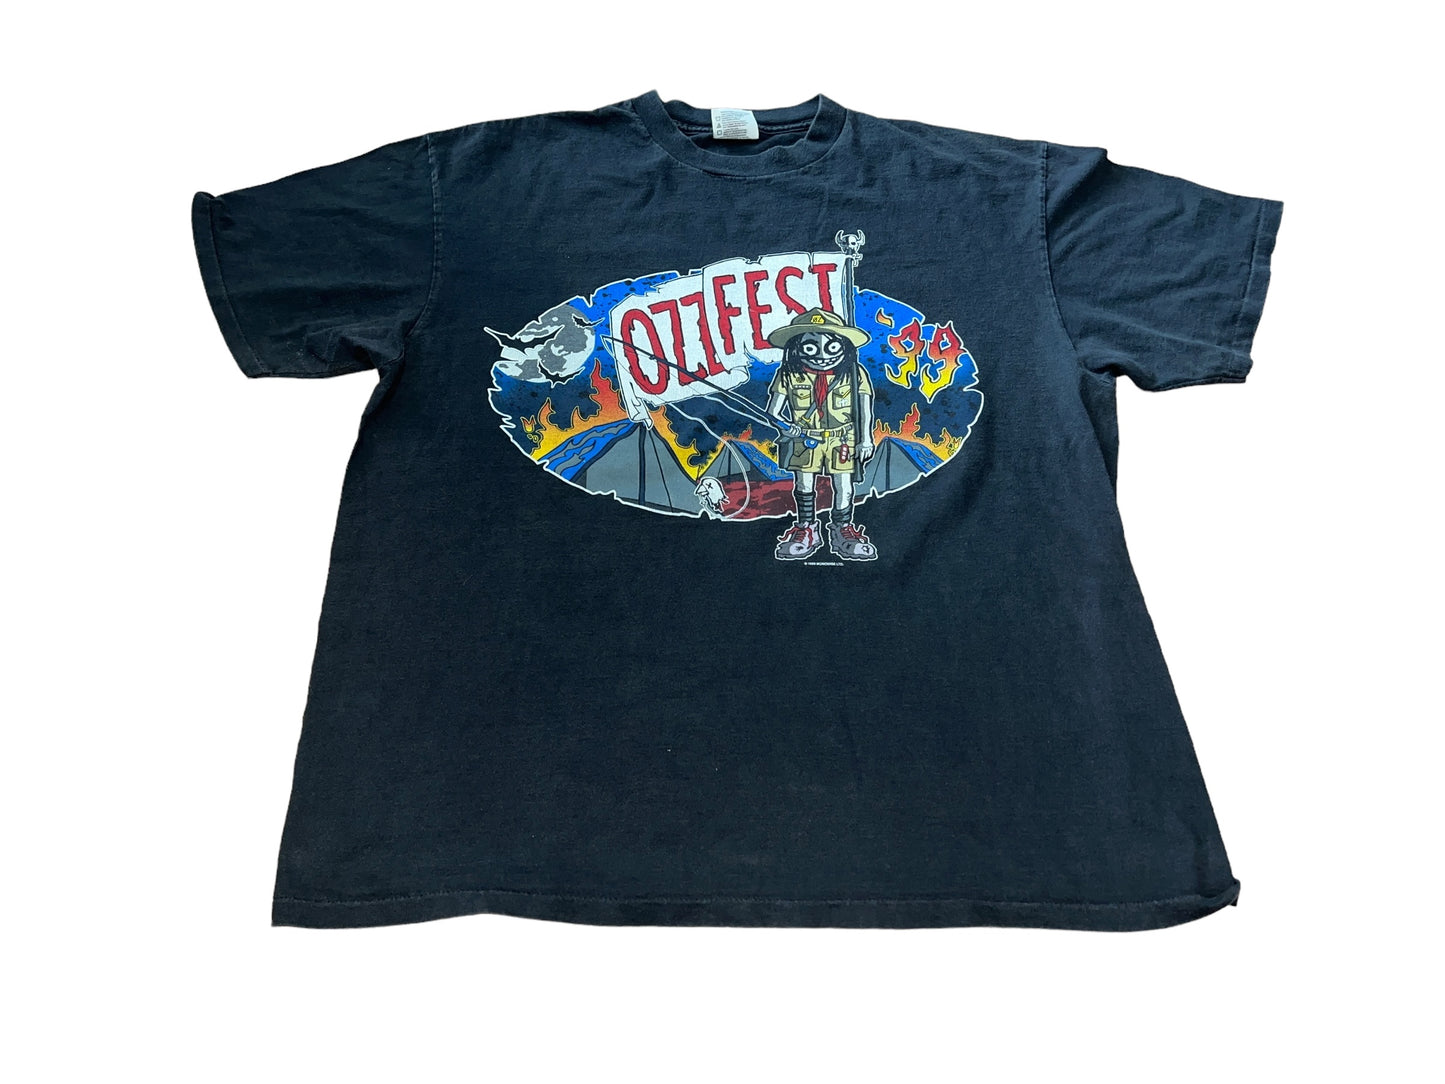 Vintage 1999 Ozzfest T-Shirt